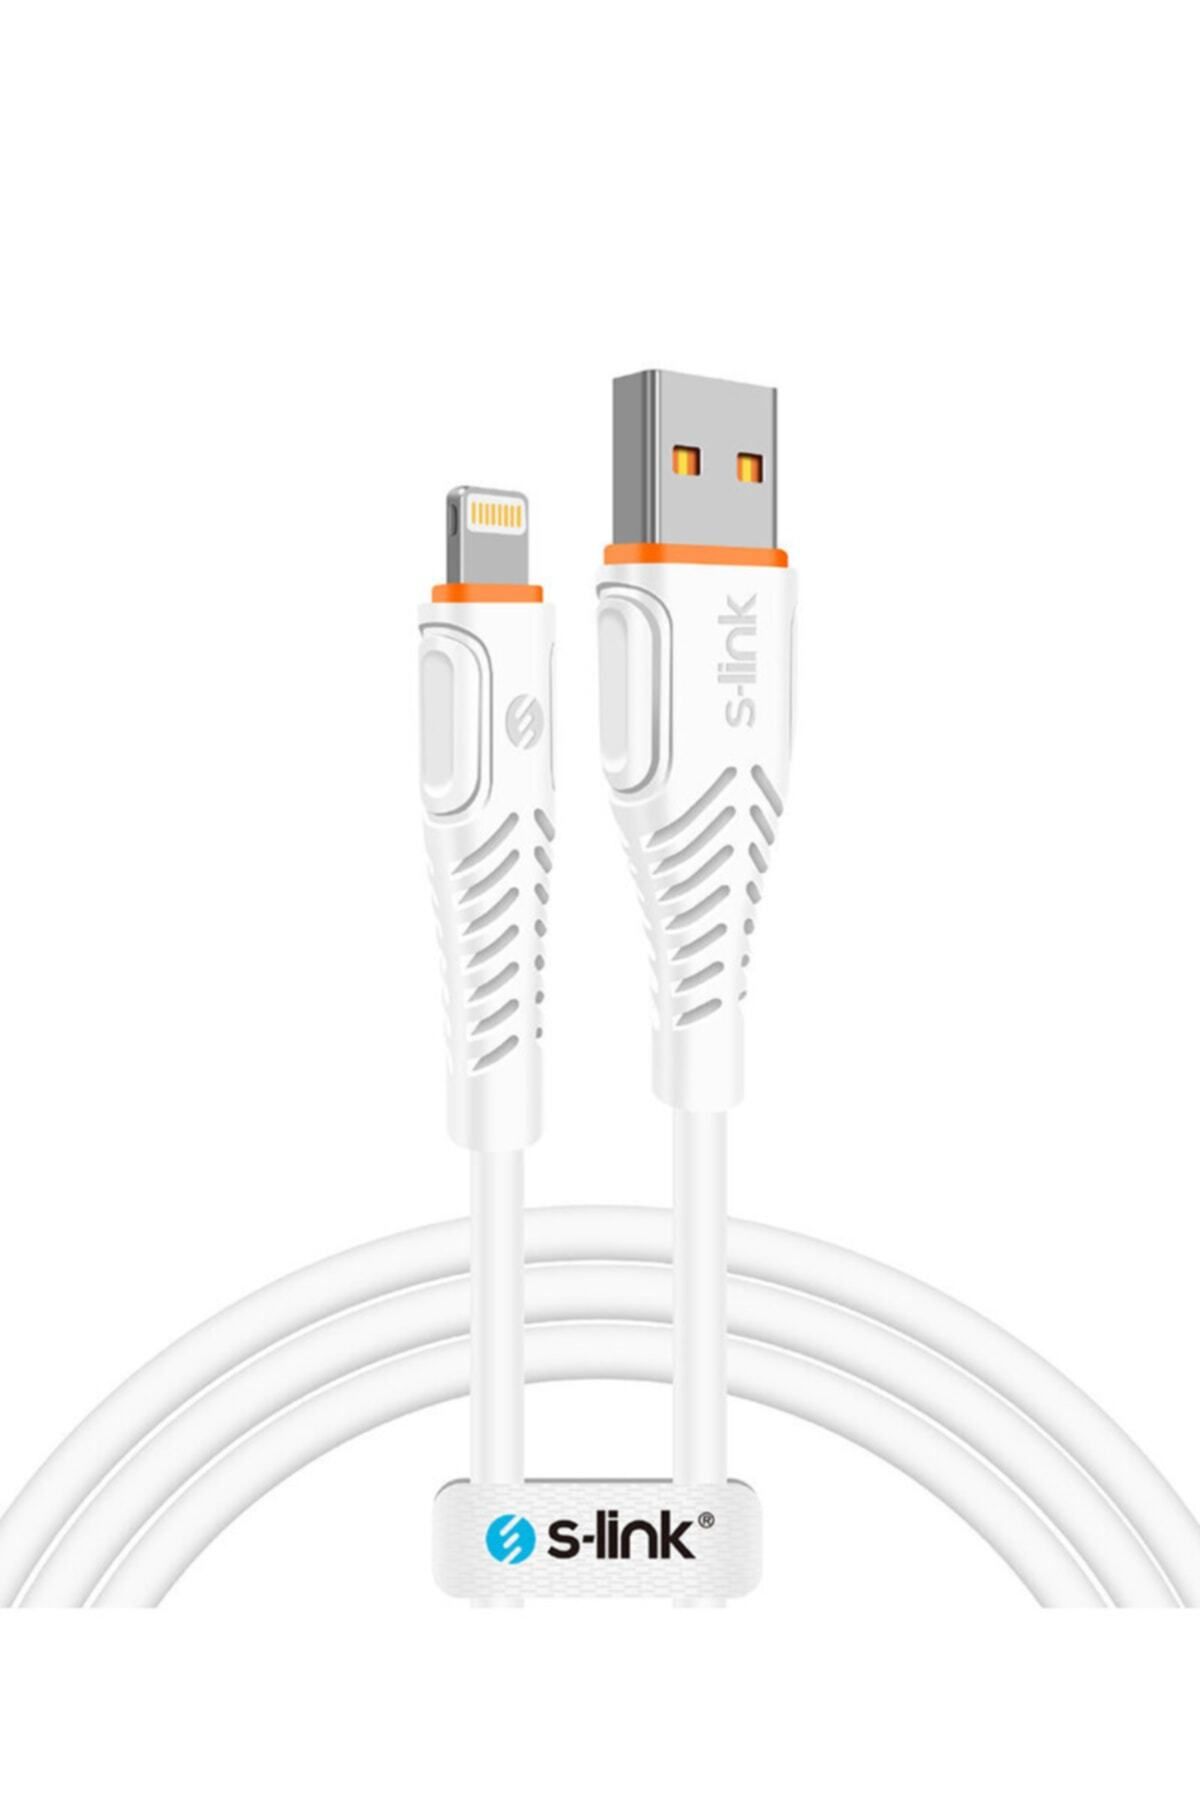 S-Link Swapp S-link Hızlı Şarj Ve Data Kablosu (İOS) Lightning Cable